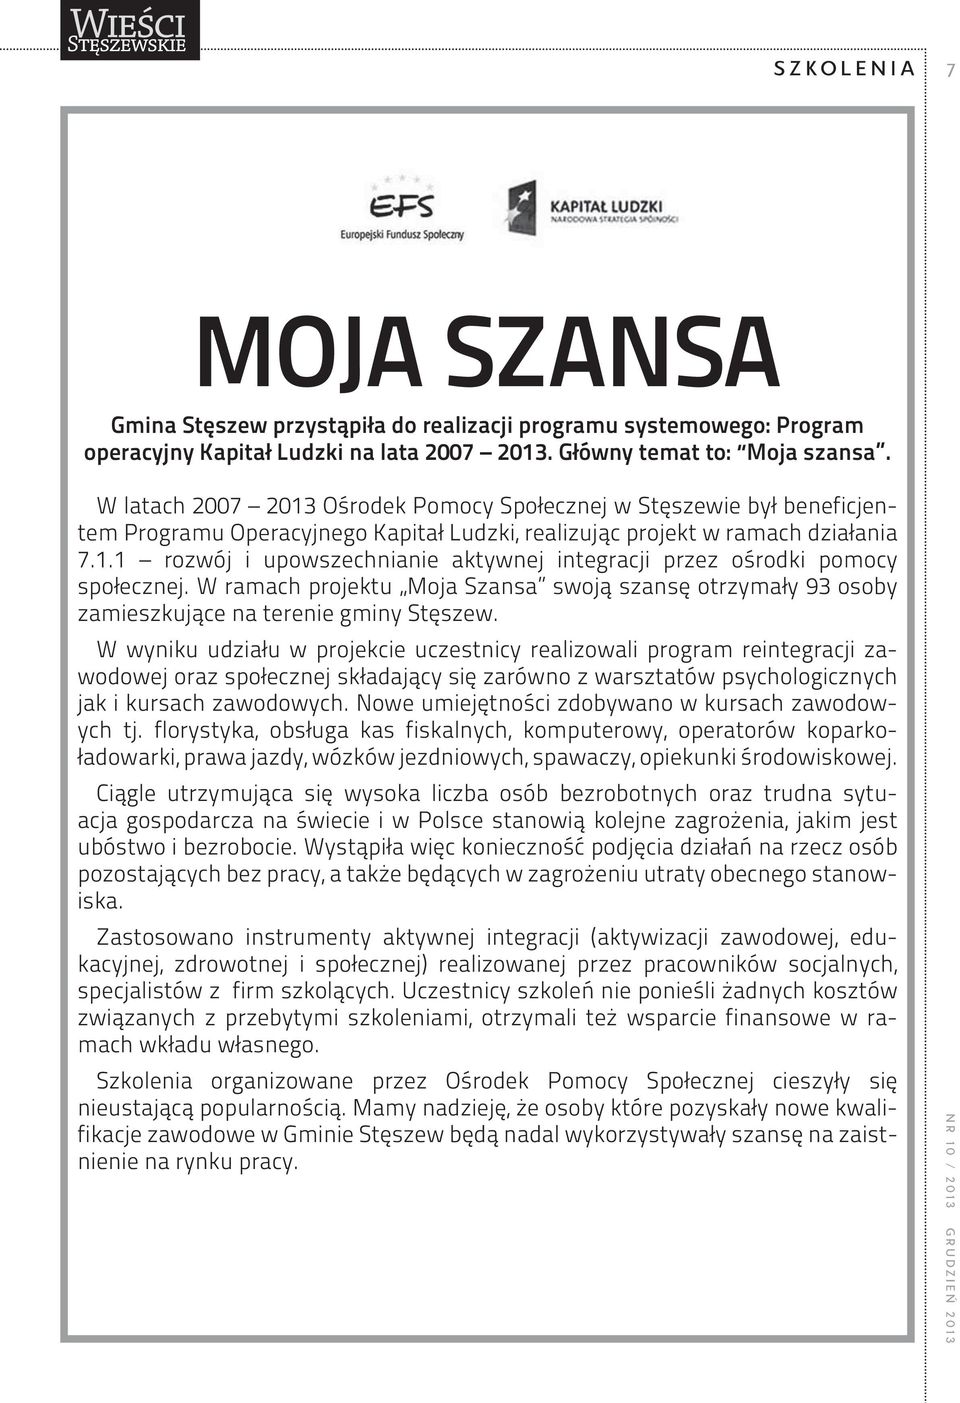 W ramach projektu Moja Szansa swoją szansę otrzymały 93 osoby zamieszkujące na terenie gminy Stęszew.